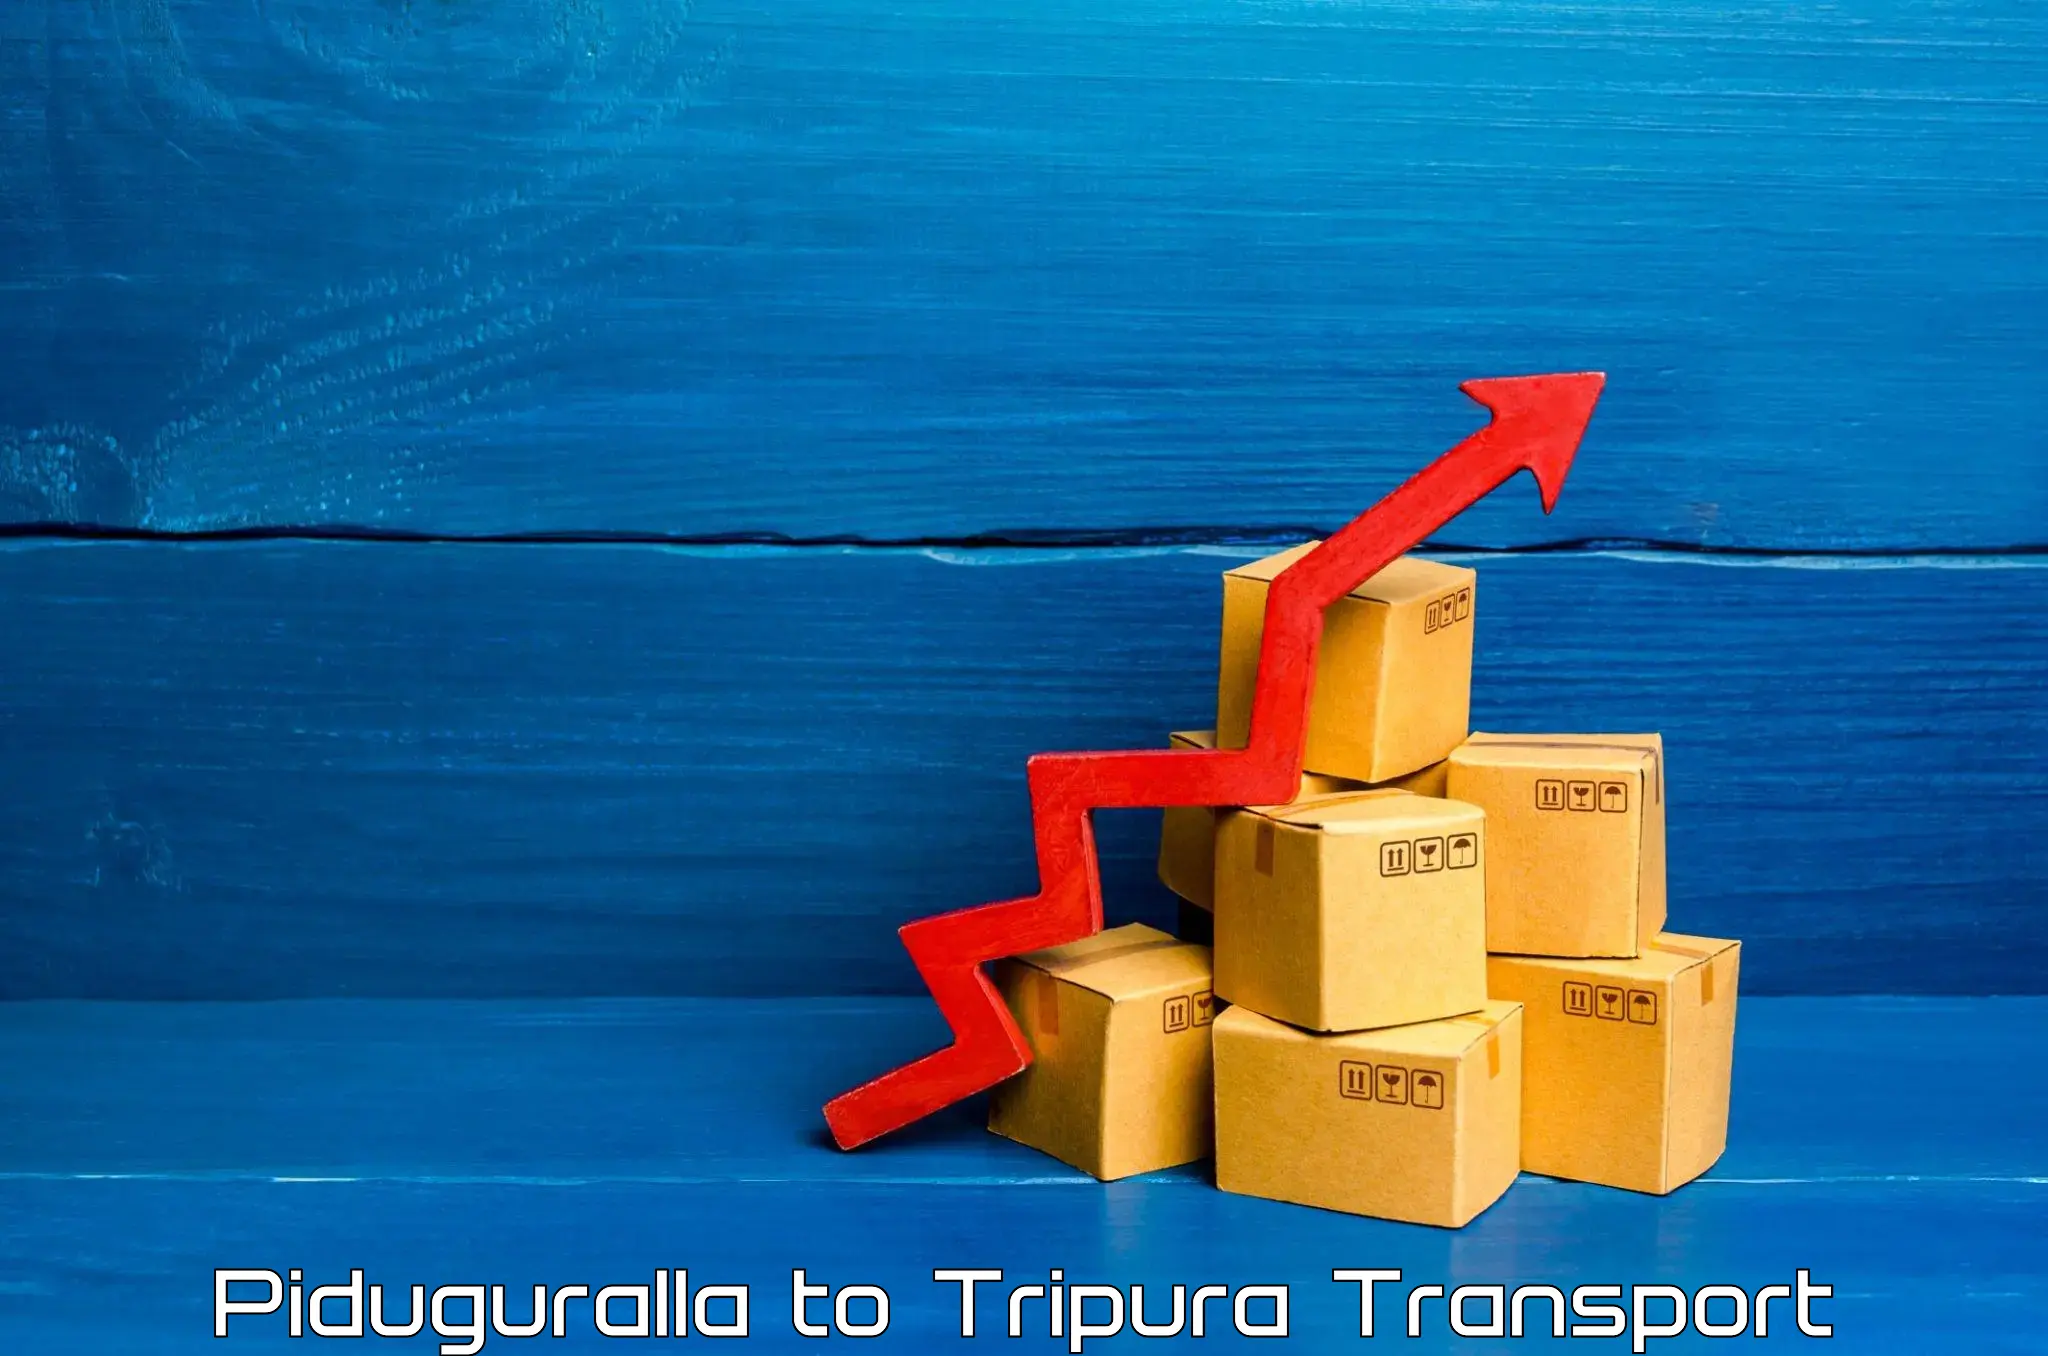 India truck logistics services Piduguralla to Tripura